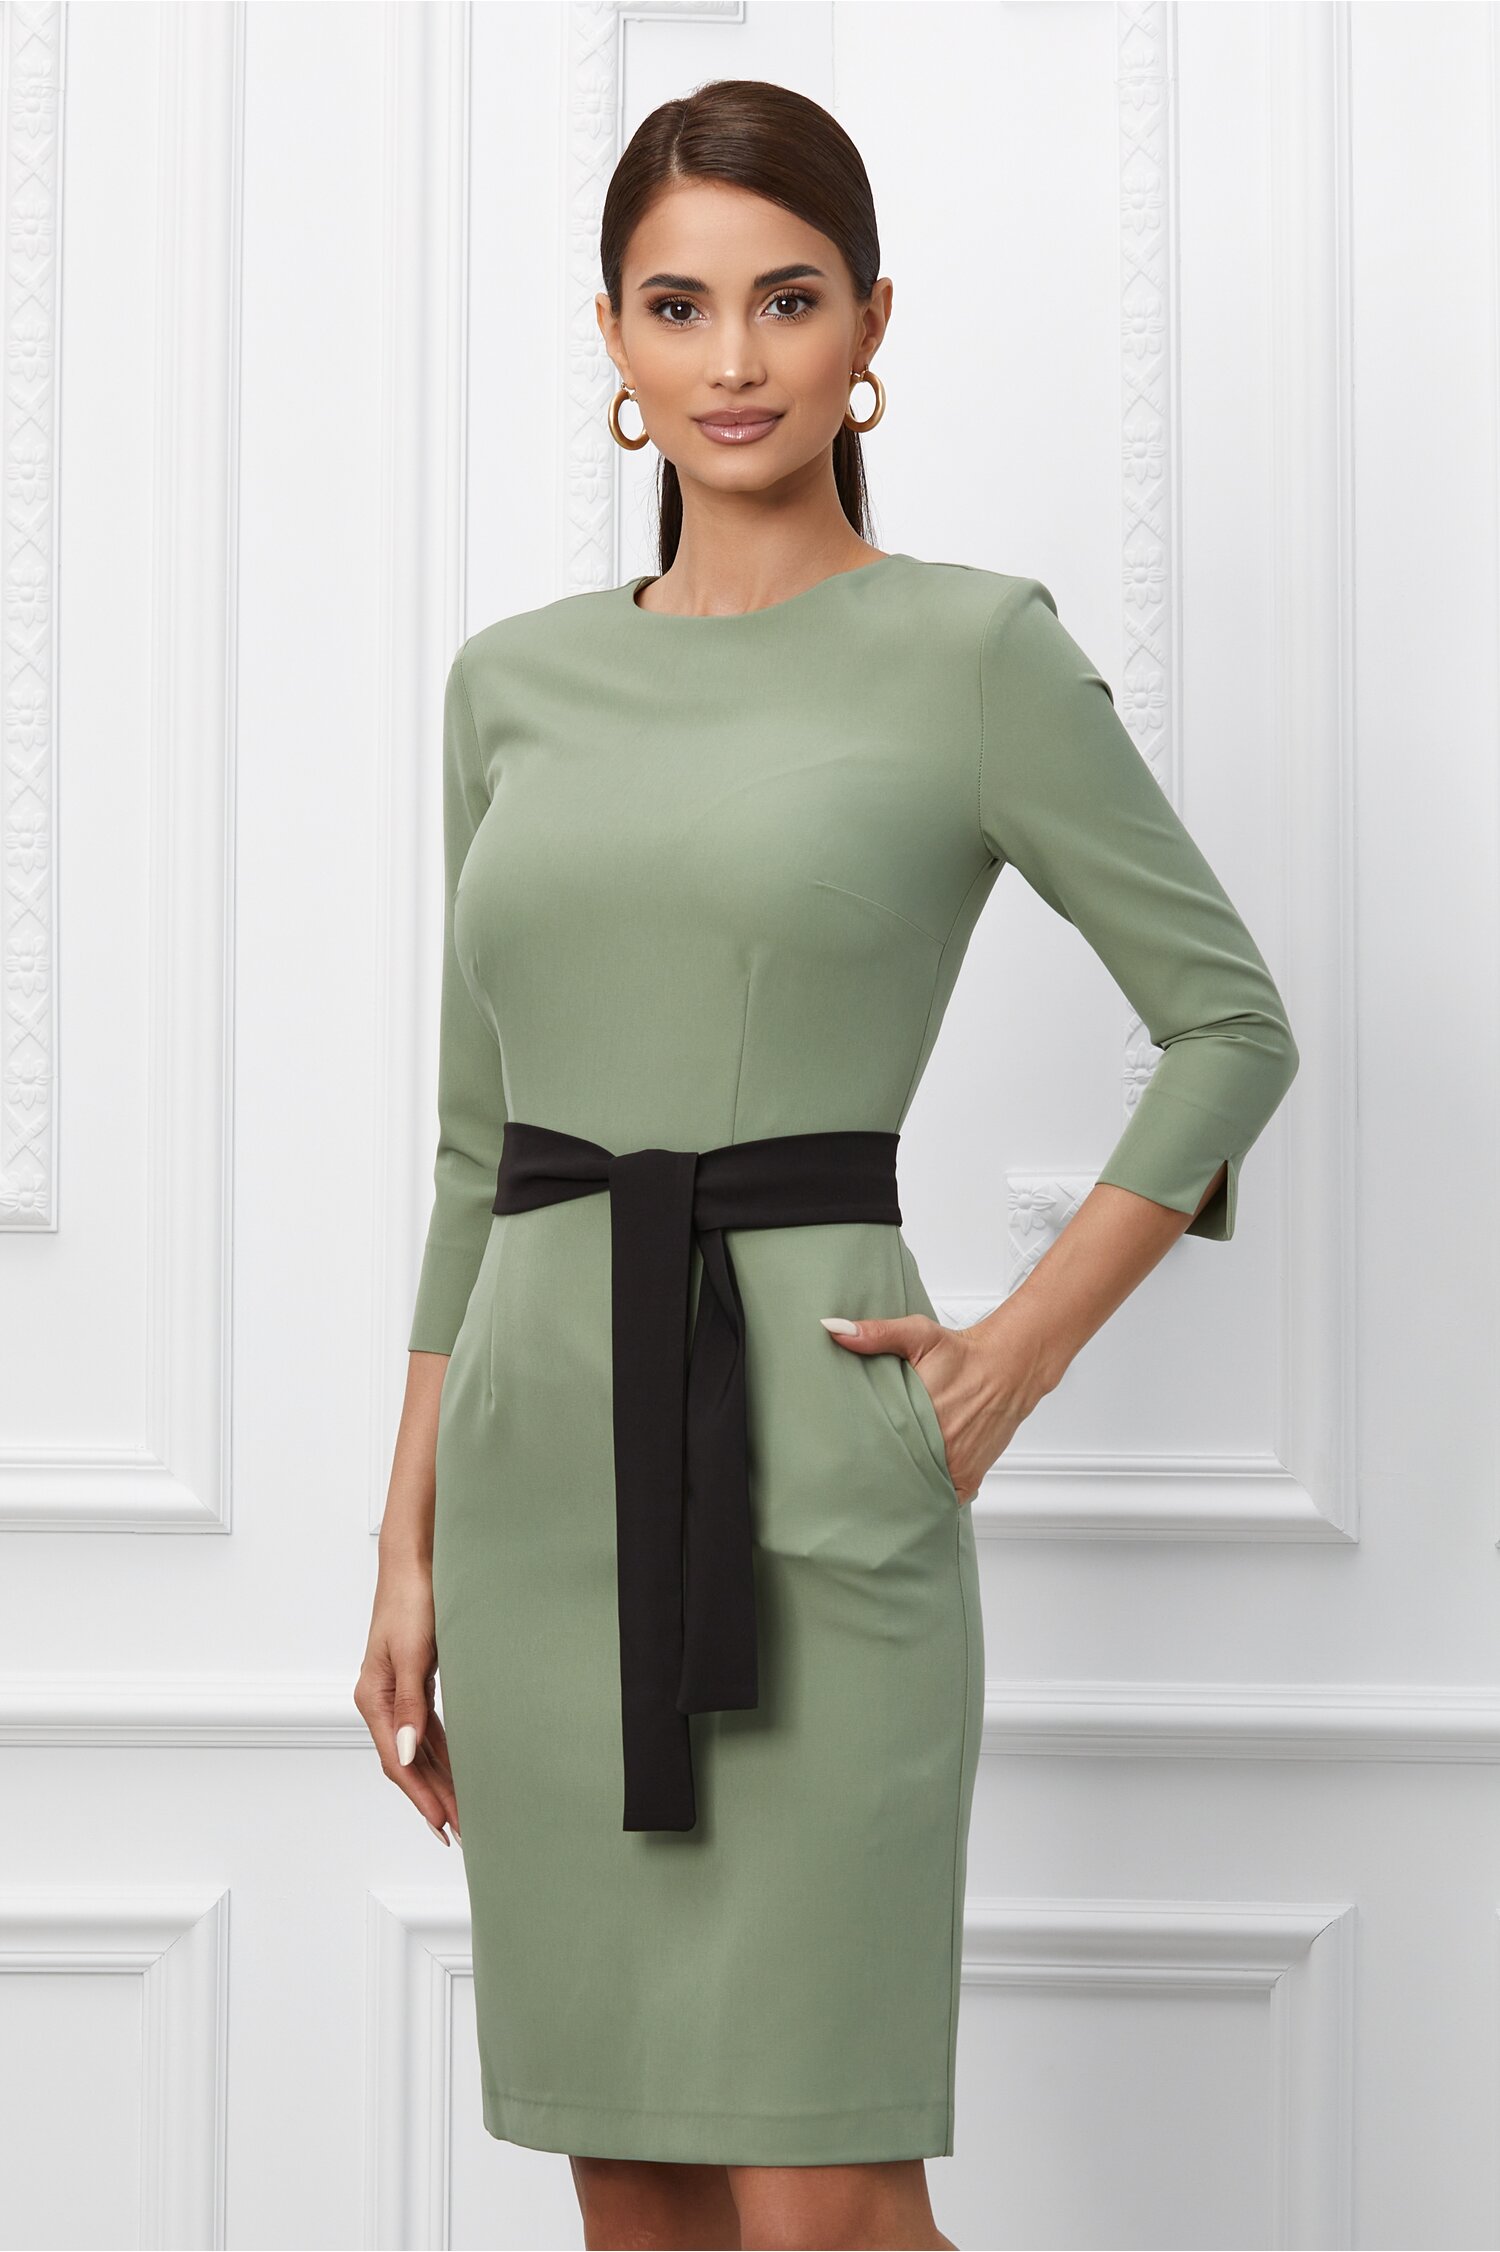 Rochie Dy Fashion verde cu cordon negru in talie 2023 ❤️ Pret Super dyfashion imagine noua 2022